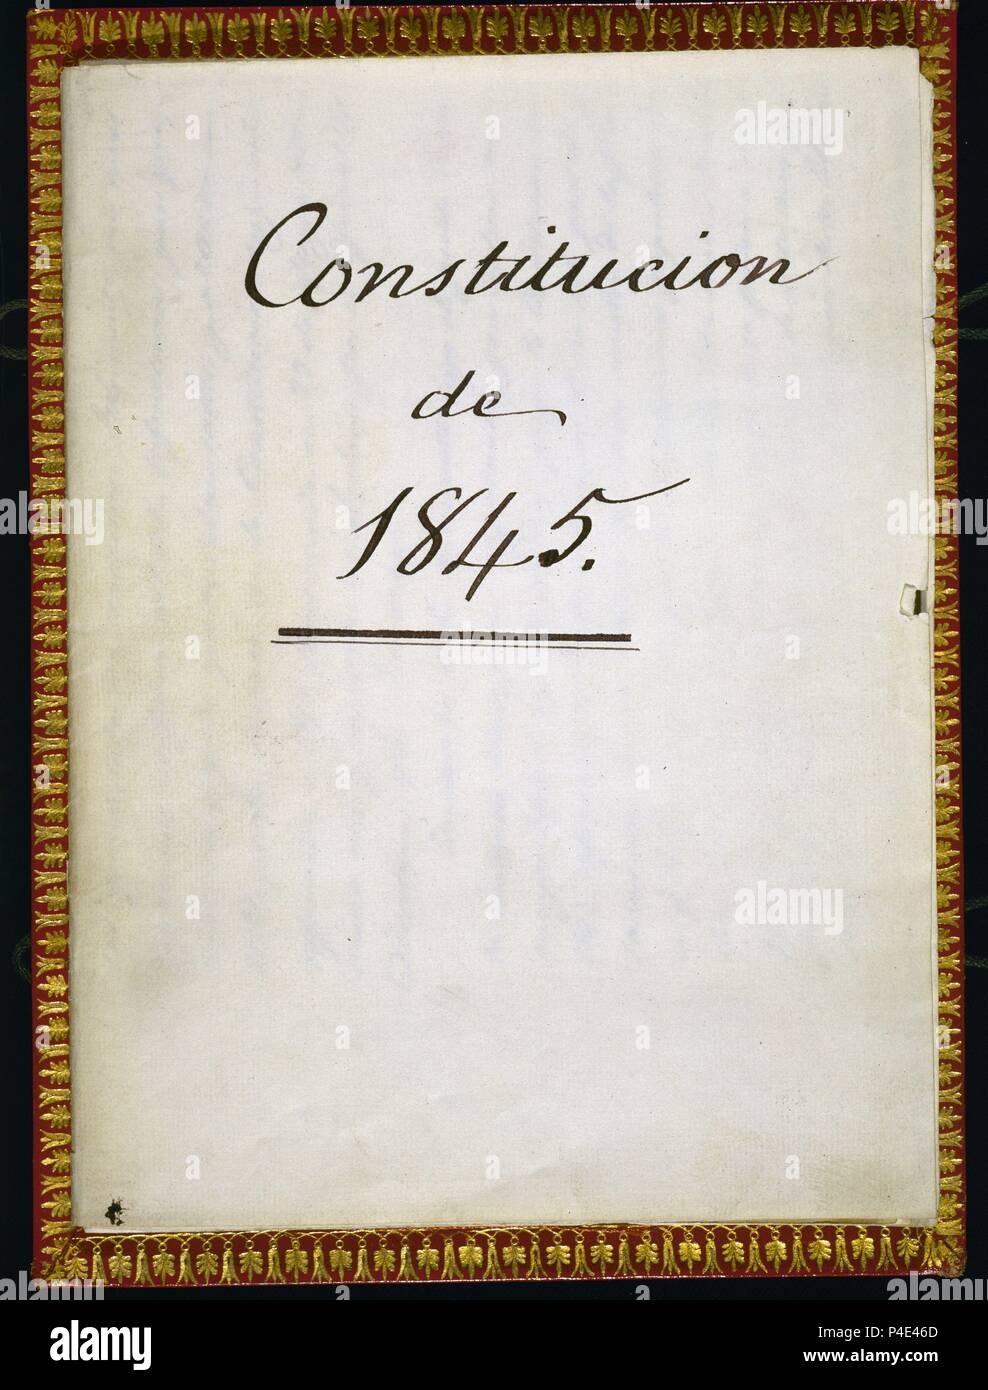 PORTADA DE LA CONSTITUCION DE 1845. Location: CONGRESO DE LOS DIPUTADOS-BIBLIOTECA, MADRID, SPAIN. Stock Photo